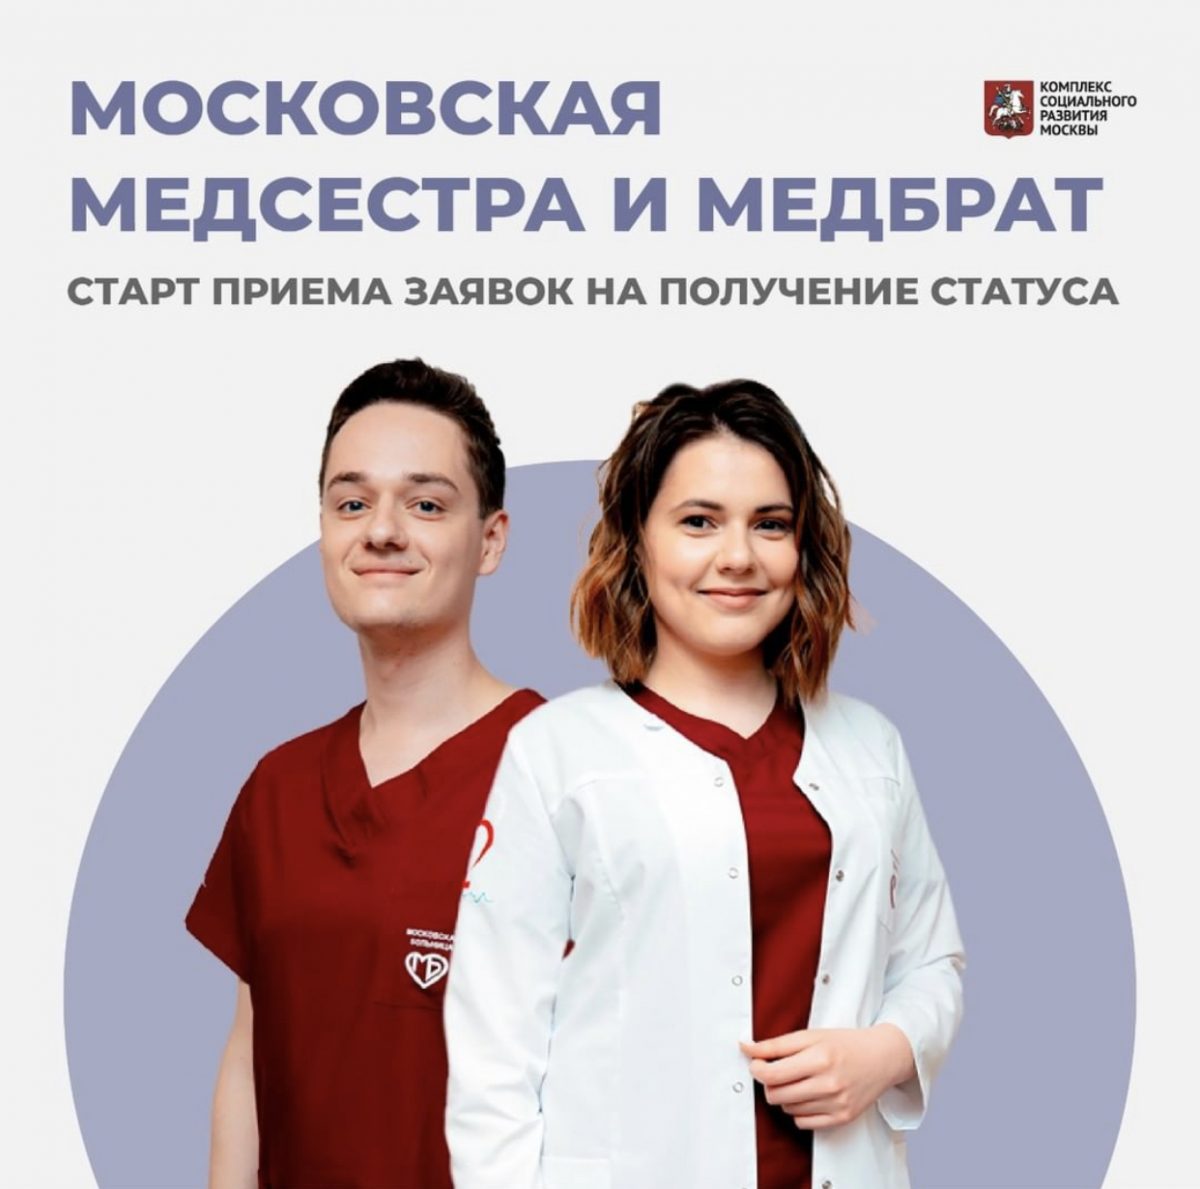 Открыт прием заявок на получение статуса «Московская медицинская сестра» и «Московский медицинский брат»